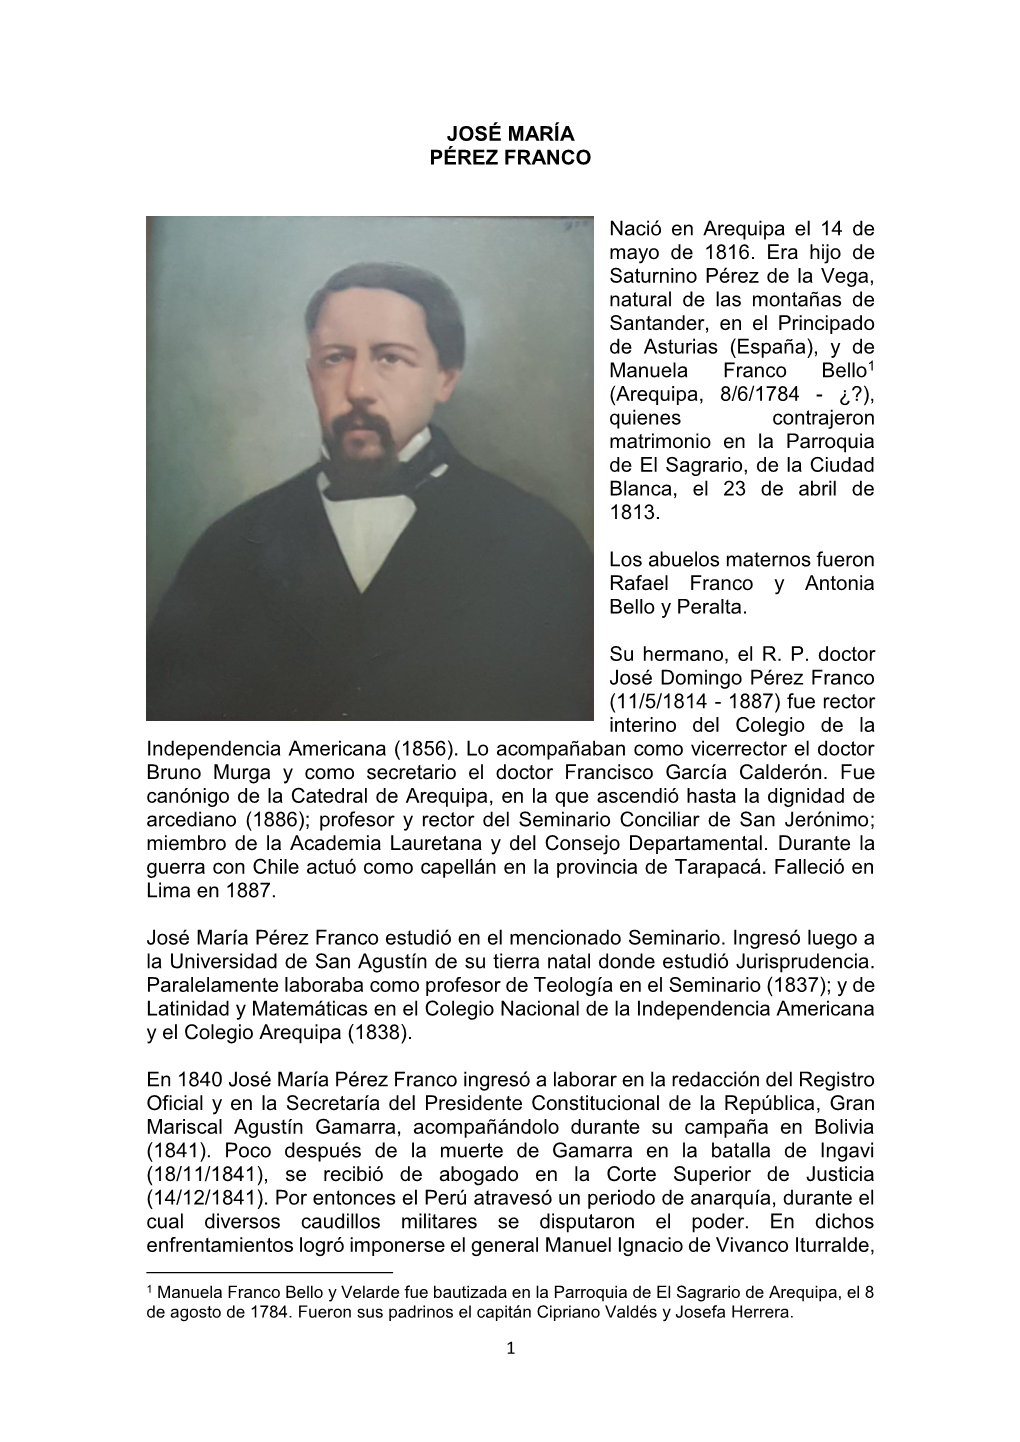 JOSÉ MARÍA PÉREZ FRANCO Nació En Arequipa El 14 De Mayo De 1816